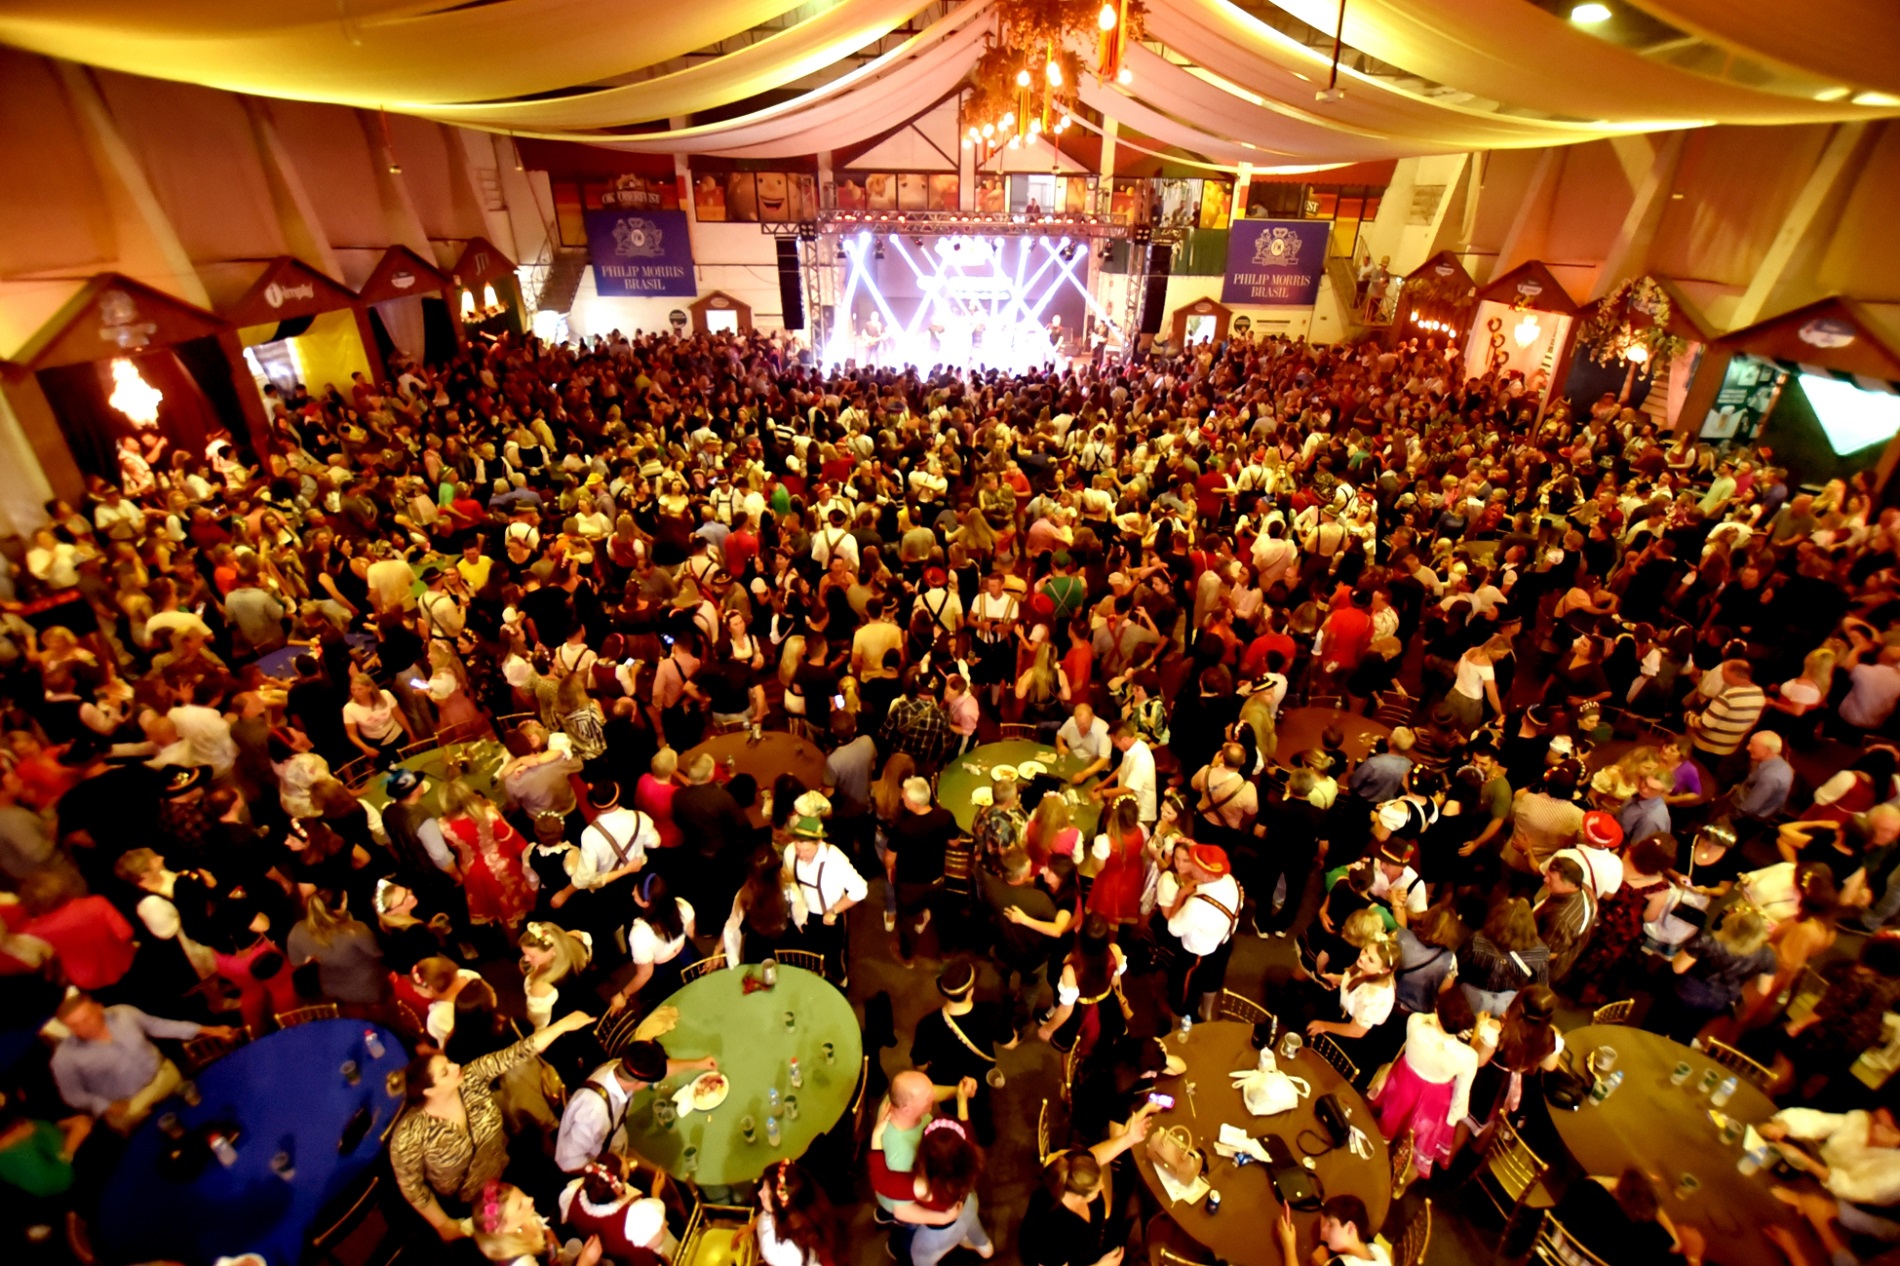 IGP estreia na Oktoberfest de Santa Cruz do Sul - IGP-RS